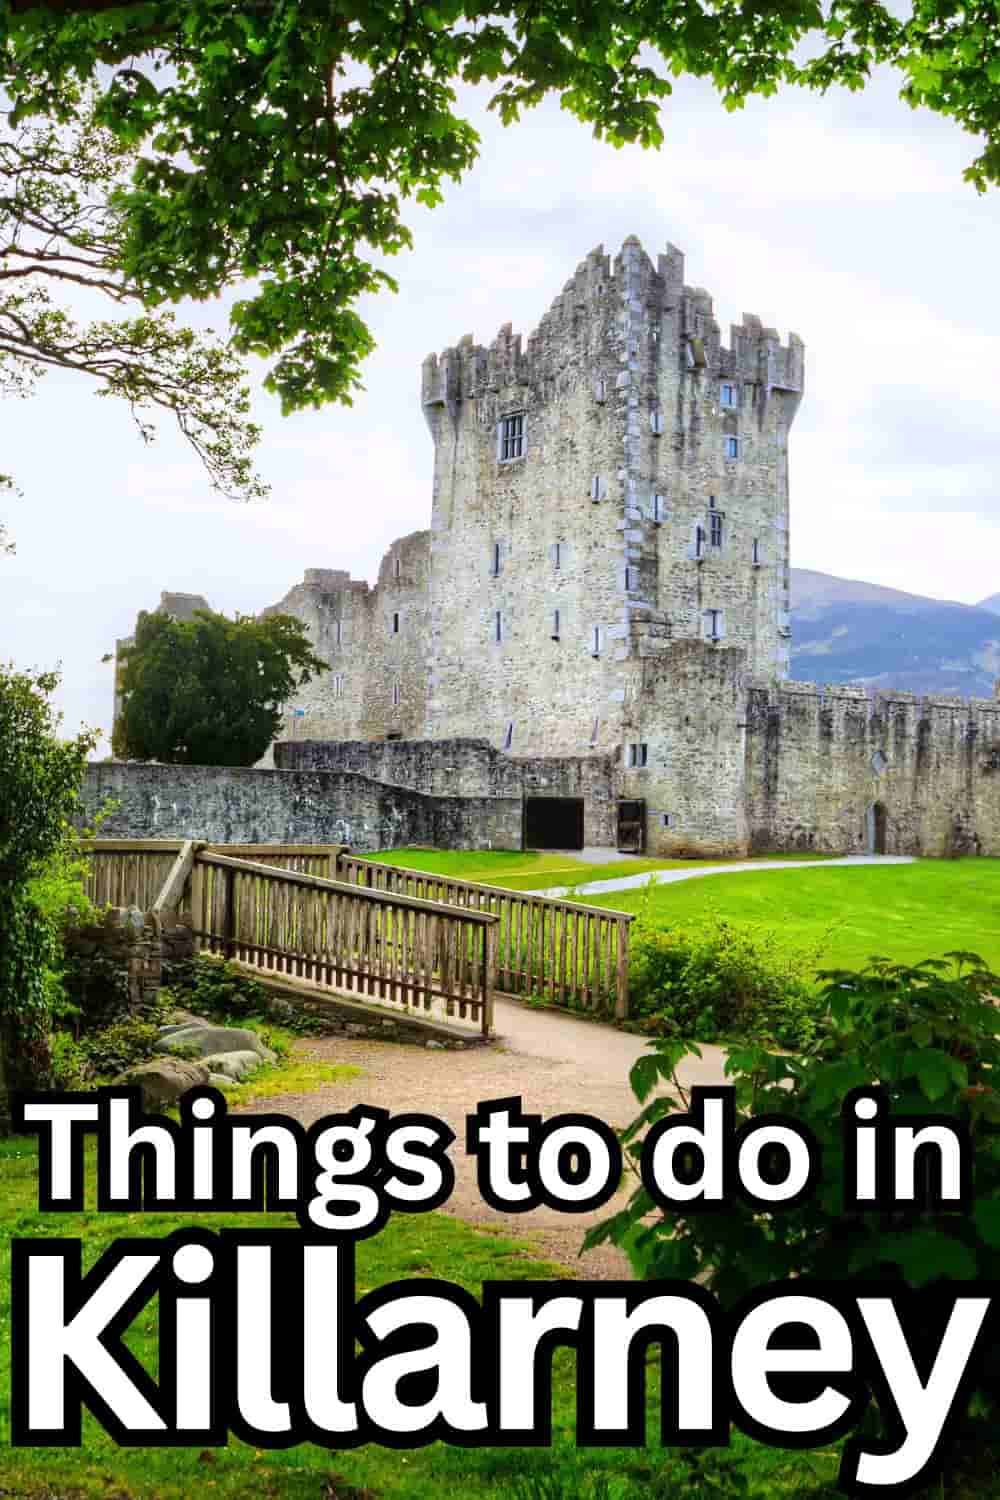 Things to do in Killarney Ireland